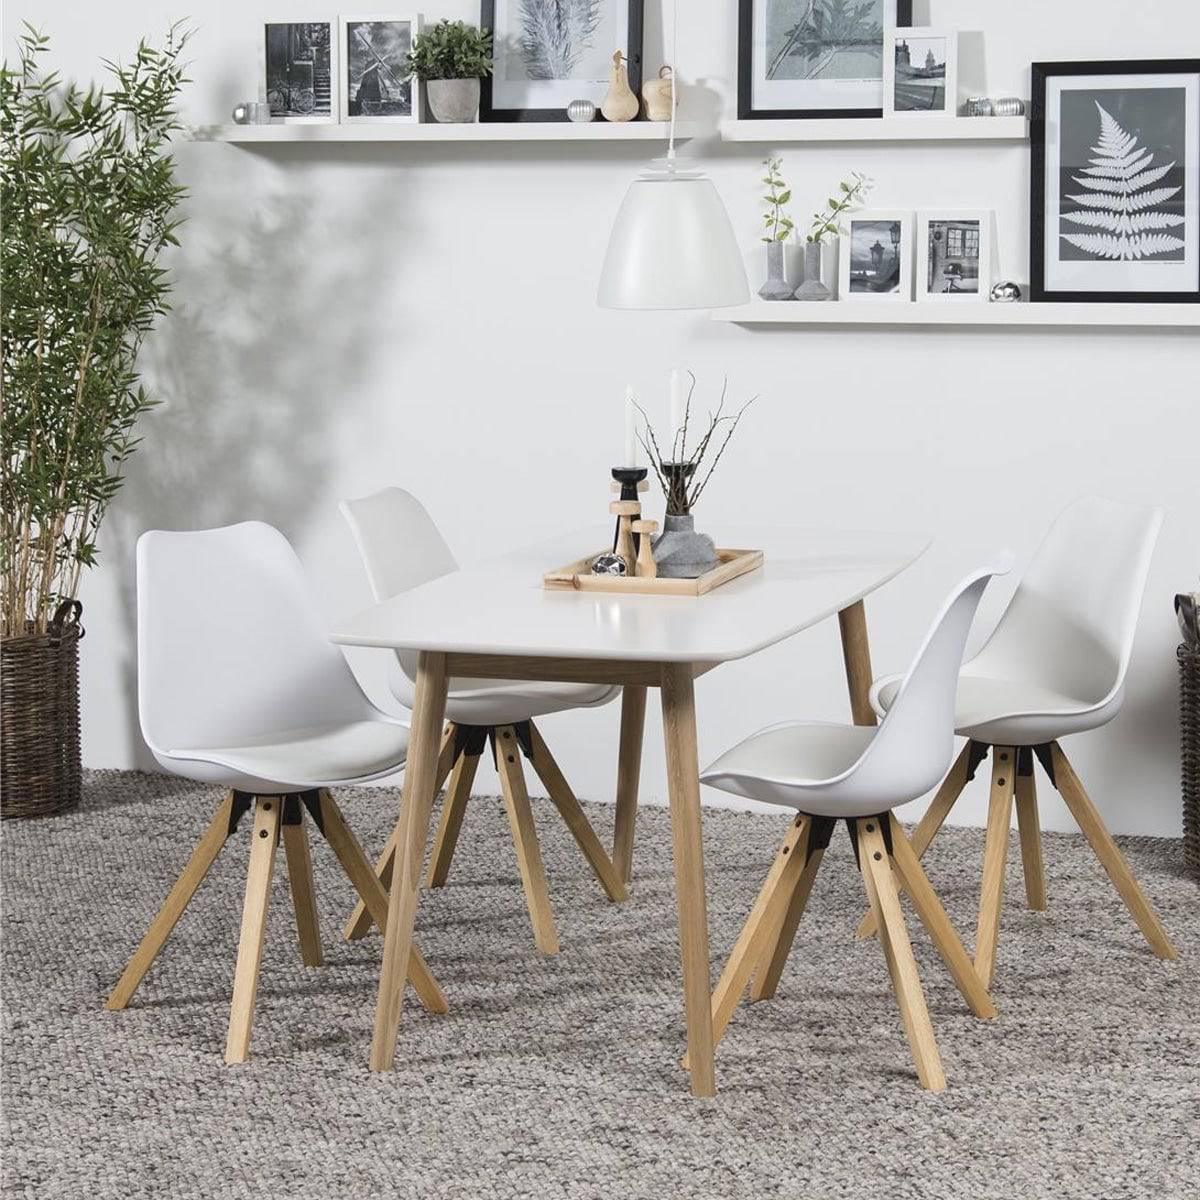 Dima spisebordsstol, Hvid/natur - Møbelkompagniet